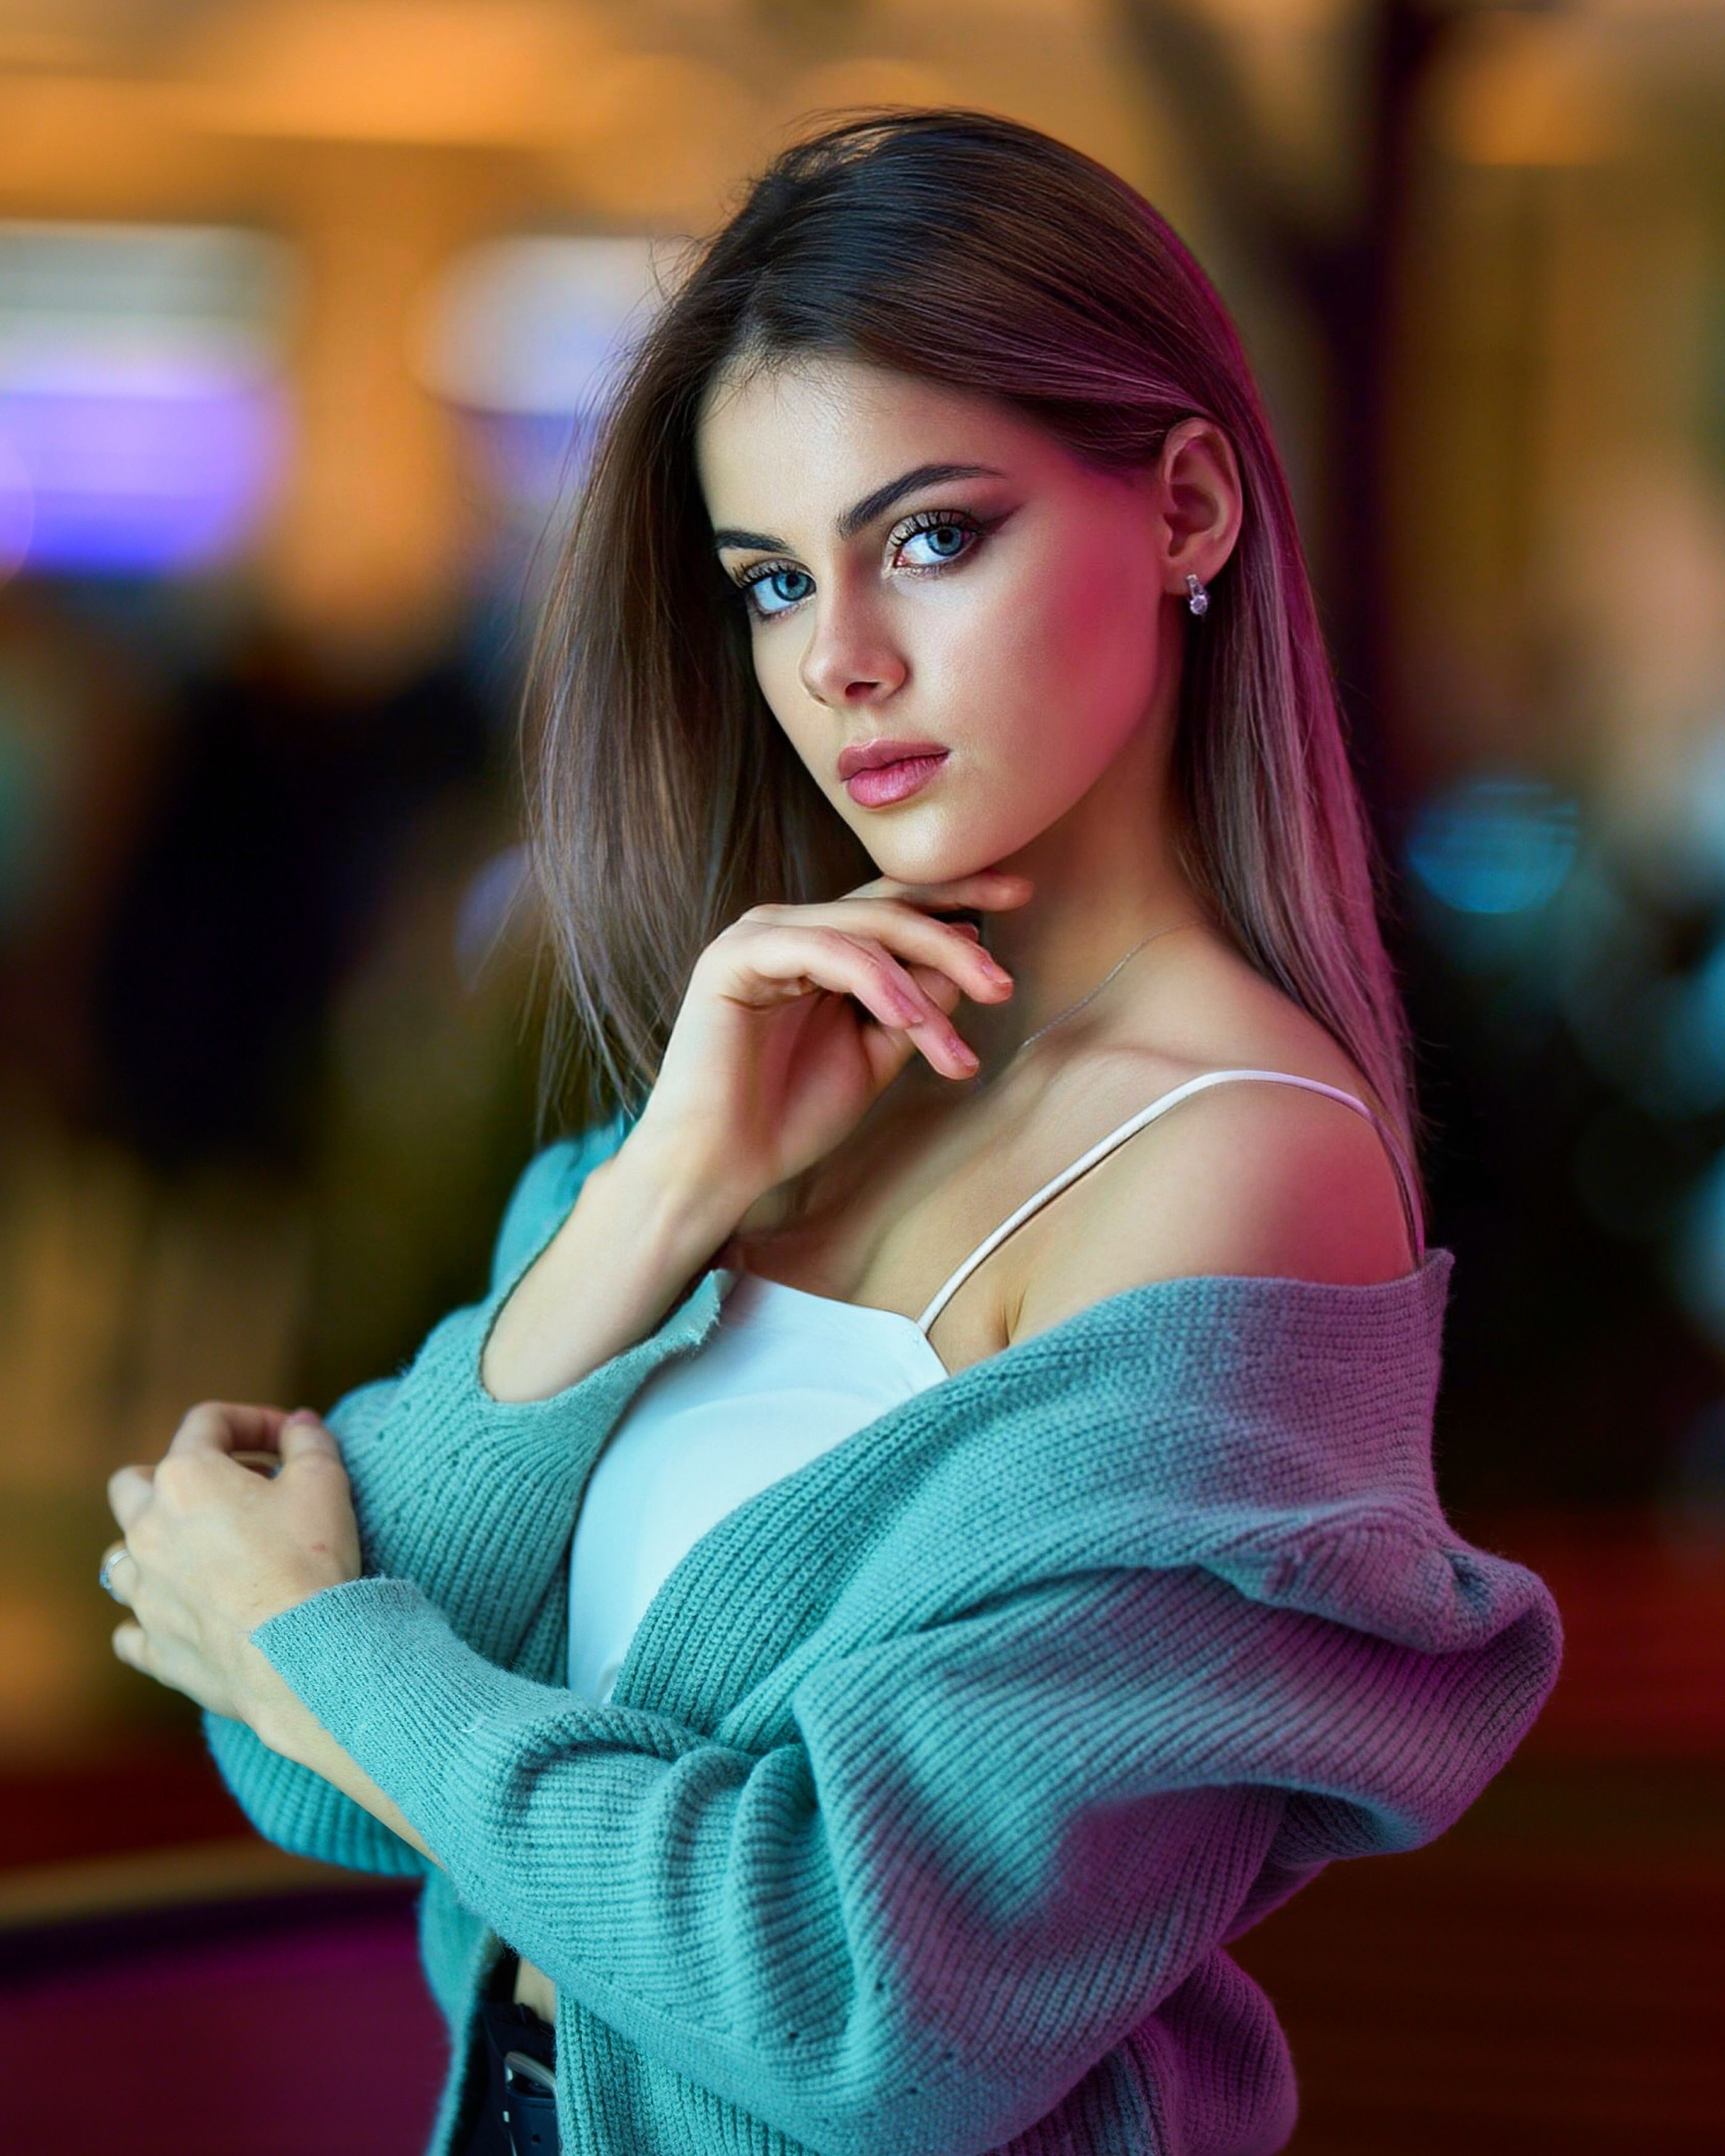 модель, девушка, portrait, girl, sonya7iv, 135mm18, Сергей Чурносов